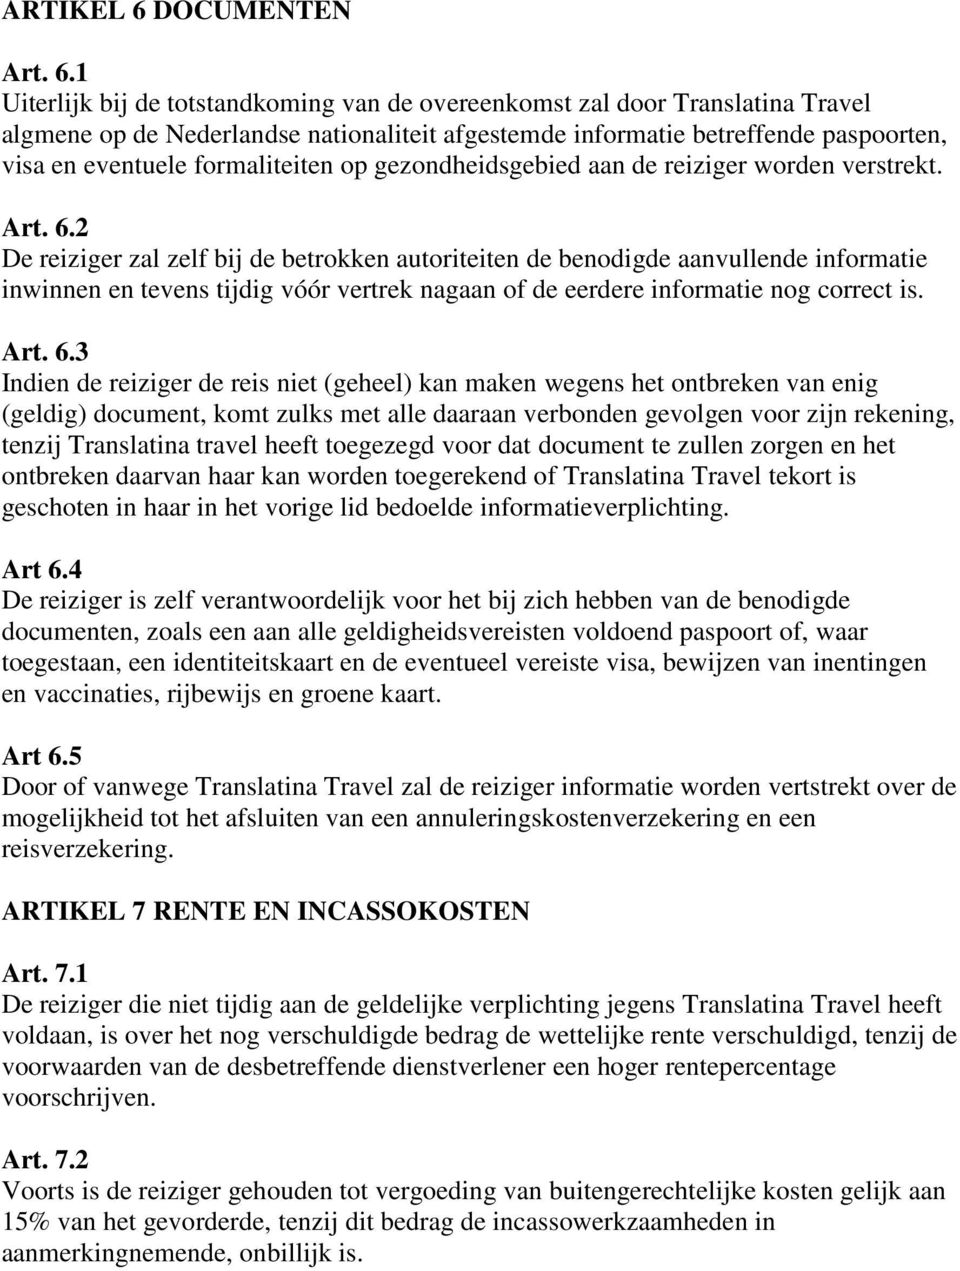 1 Uiterlijk bij de totstandkoming van de overeenkomst zal door Translatina Travel algmene op de Nederlandse nationaliteit afgestemde informatie betreffende paspoorten, visa en eventuele formaliteiten